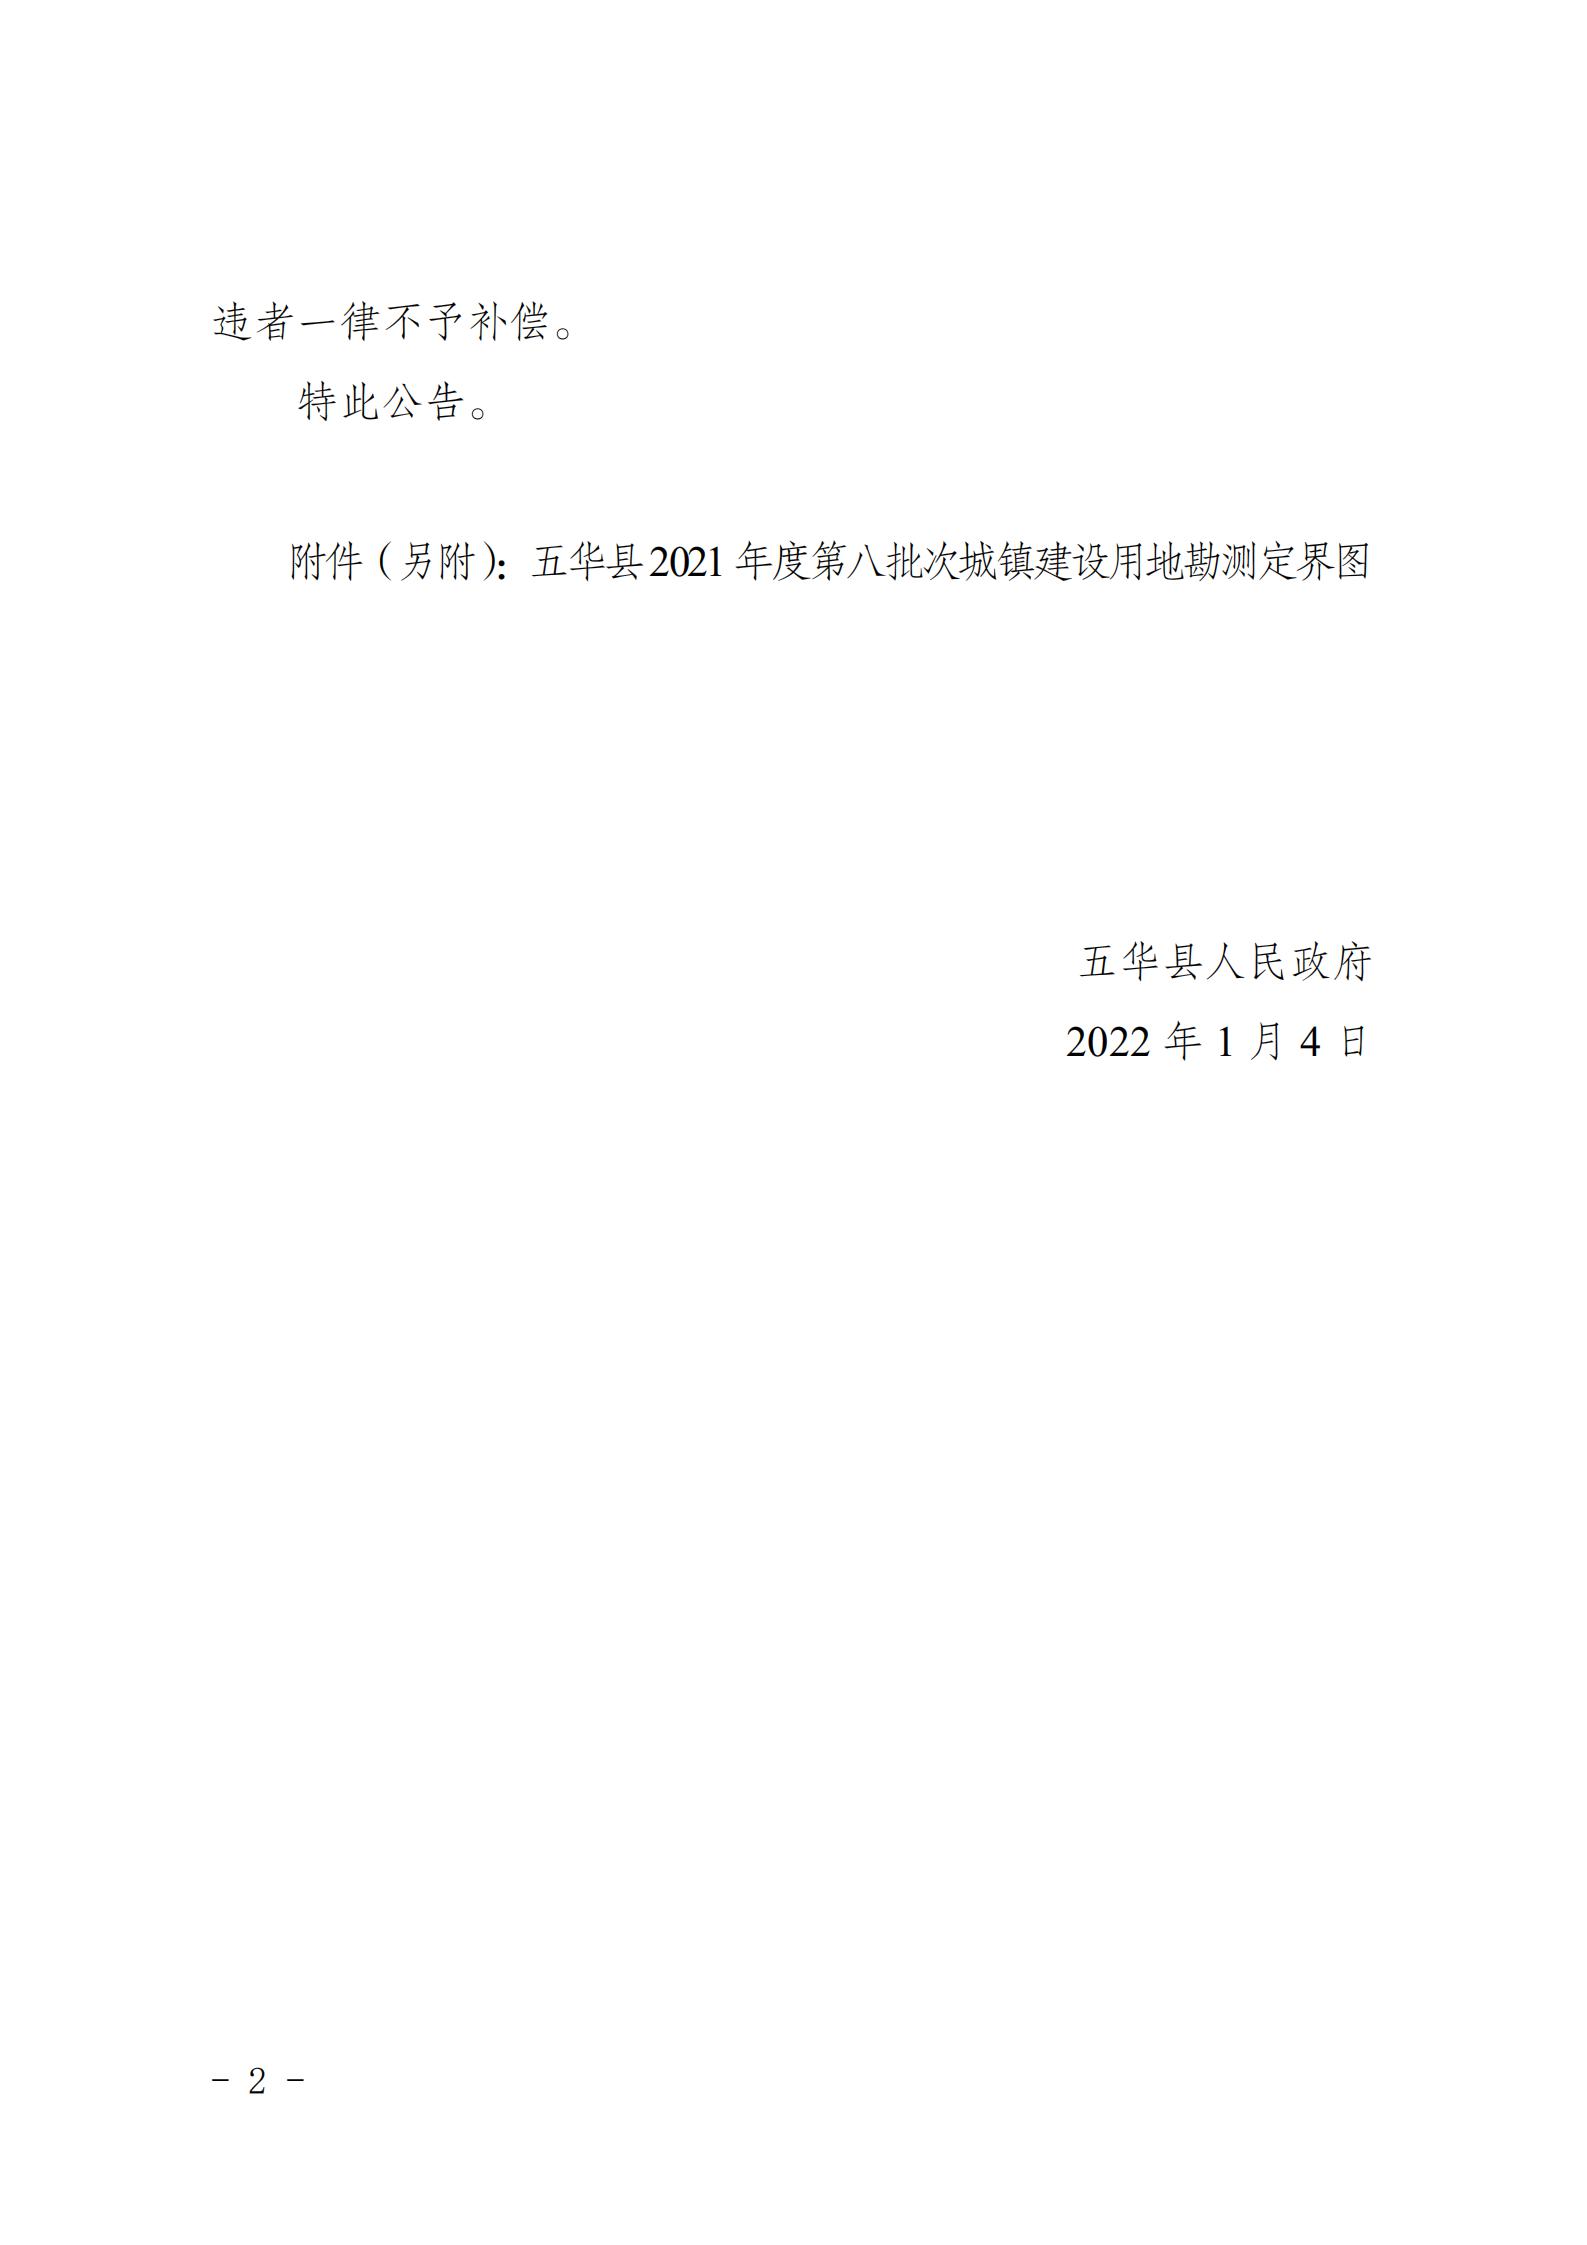 31号五华县人民政府征收土地预公告（2021年第八批次）_01.jpg